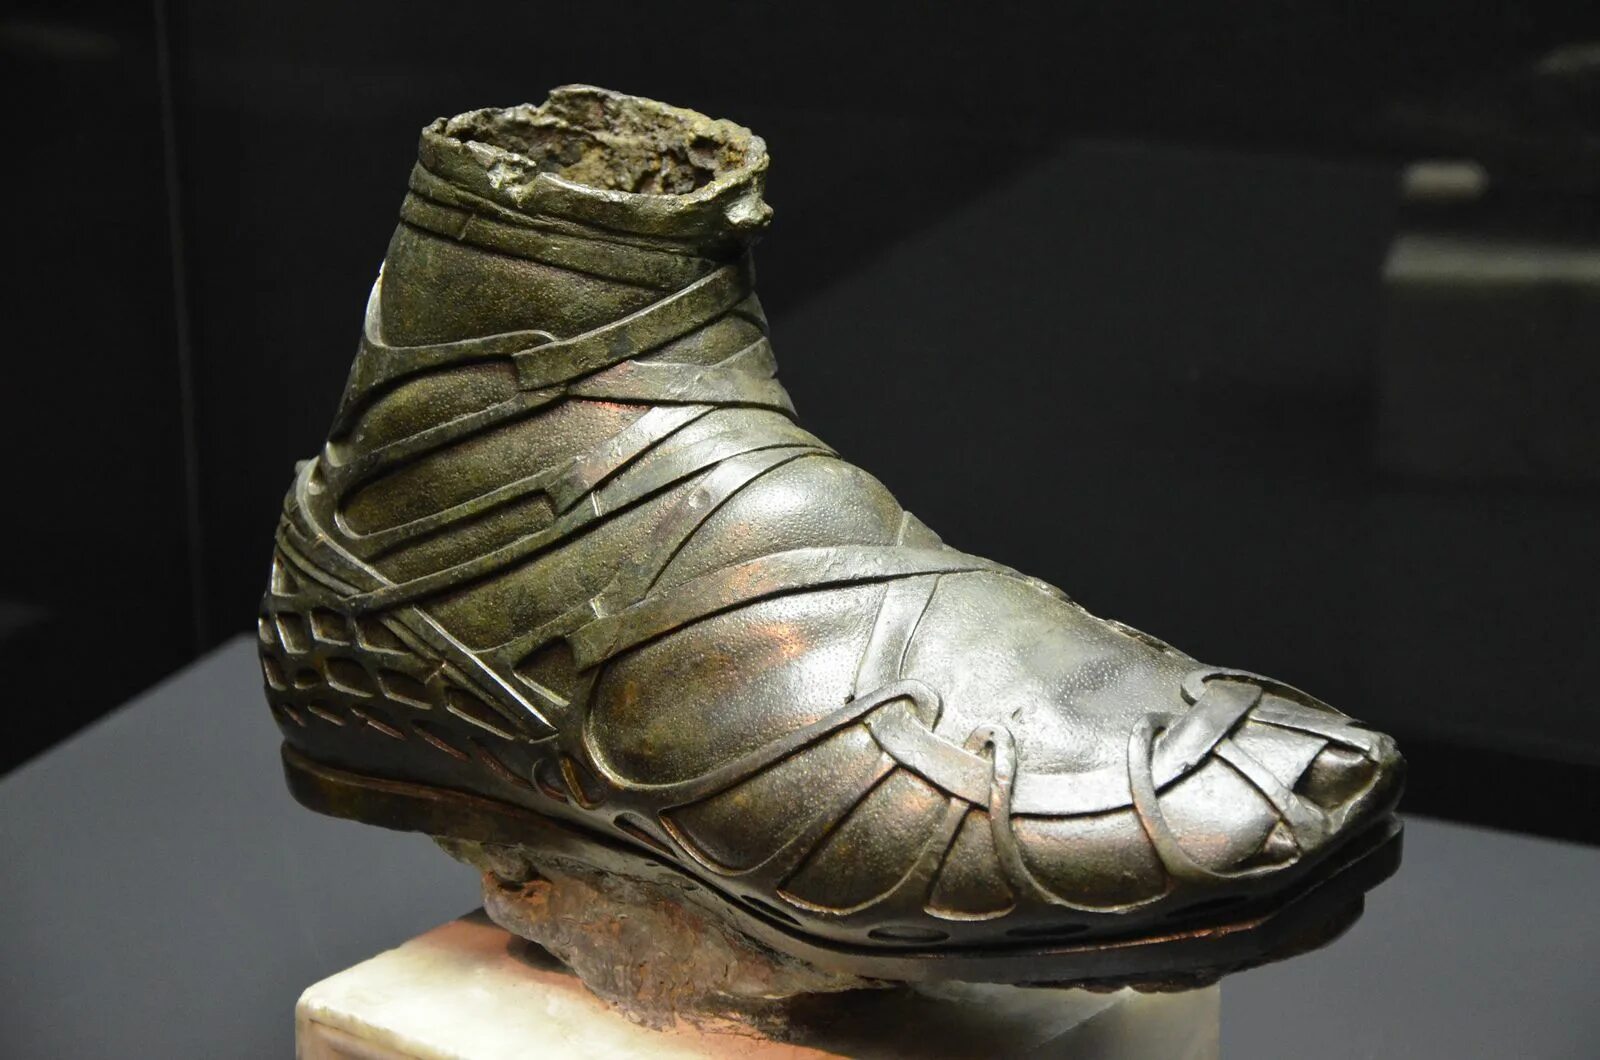 Калиги обувь древний Рим. Калиги в древнем Риме. Calceus обувь древний Рим. Римская обувь кальцеус.